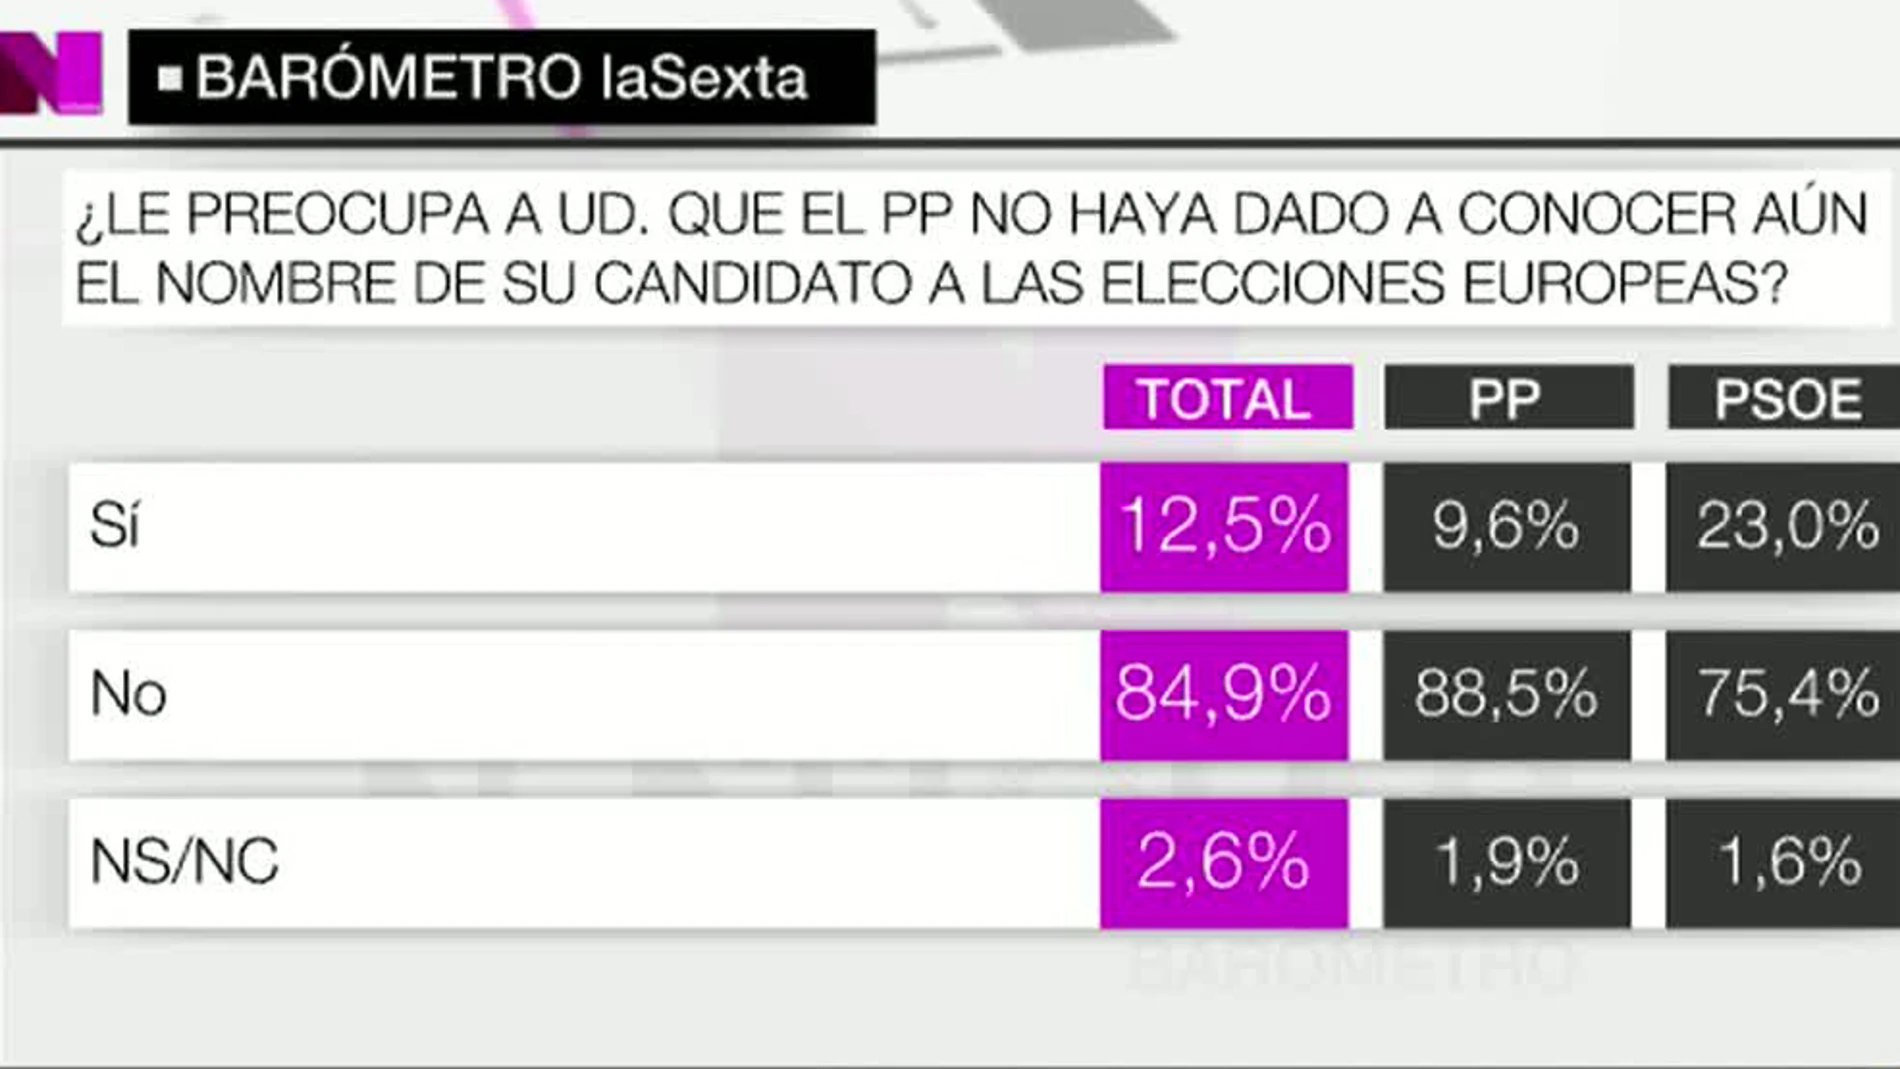 Al 85% de los españoles no les preocupa no conocer al candidato popular para las europeas